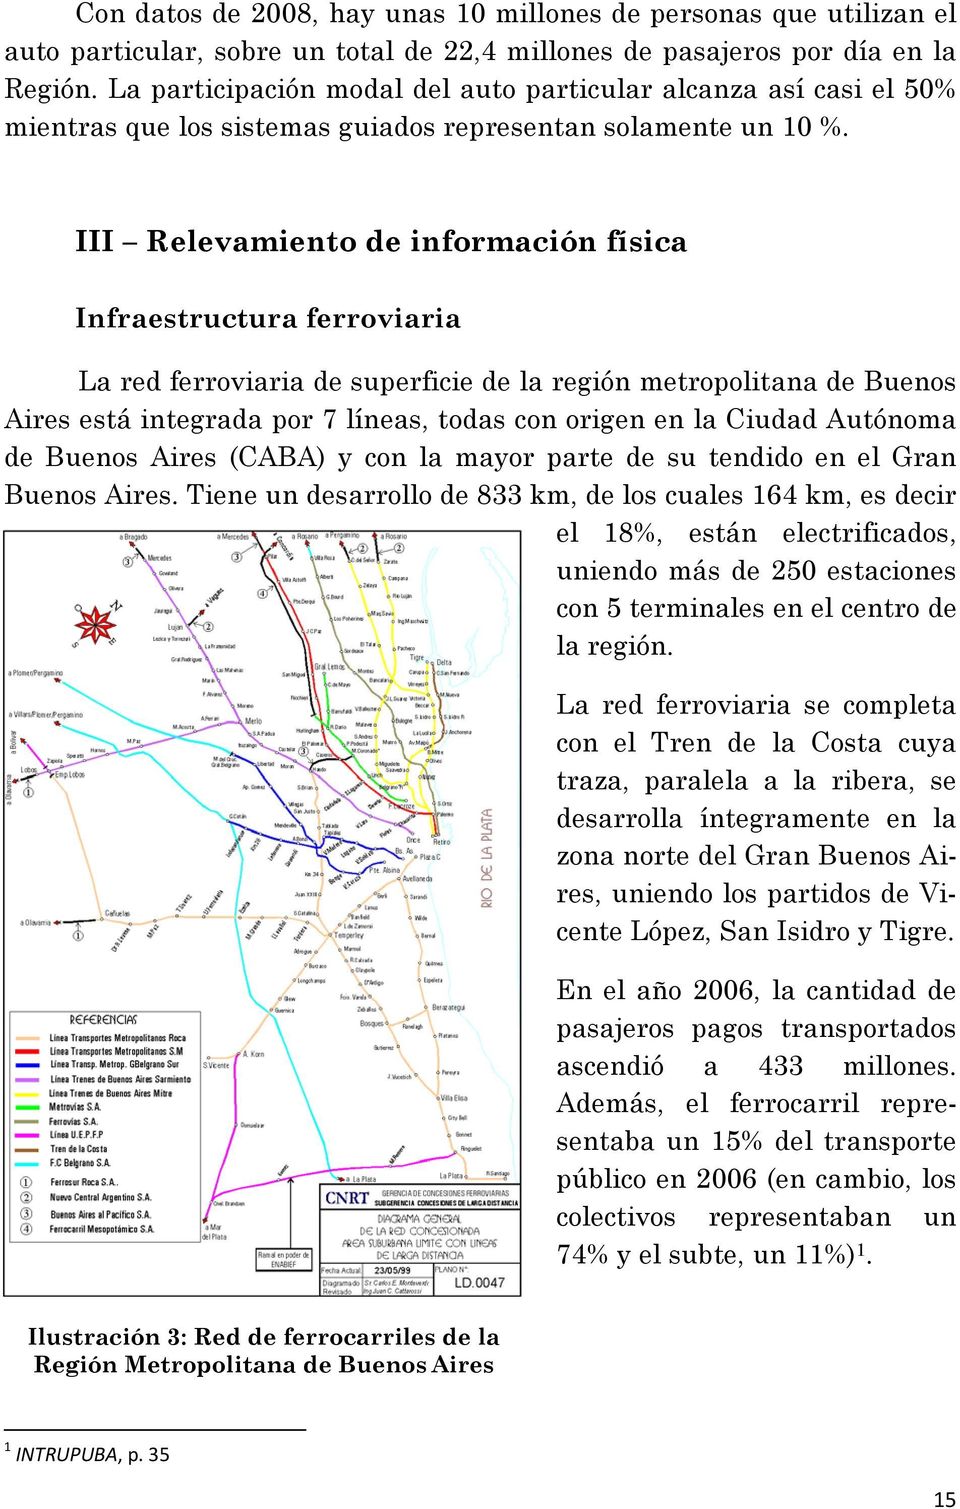 III Relevamiento de información física Infraestructura ferroviaria La red ferroviaria de superficie de la región metropolitana de Buenos Aires está integrada por 7 líneas, todas con origen en la